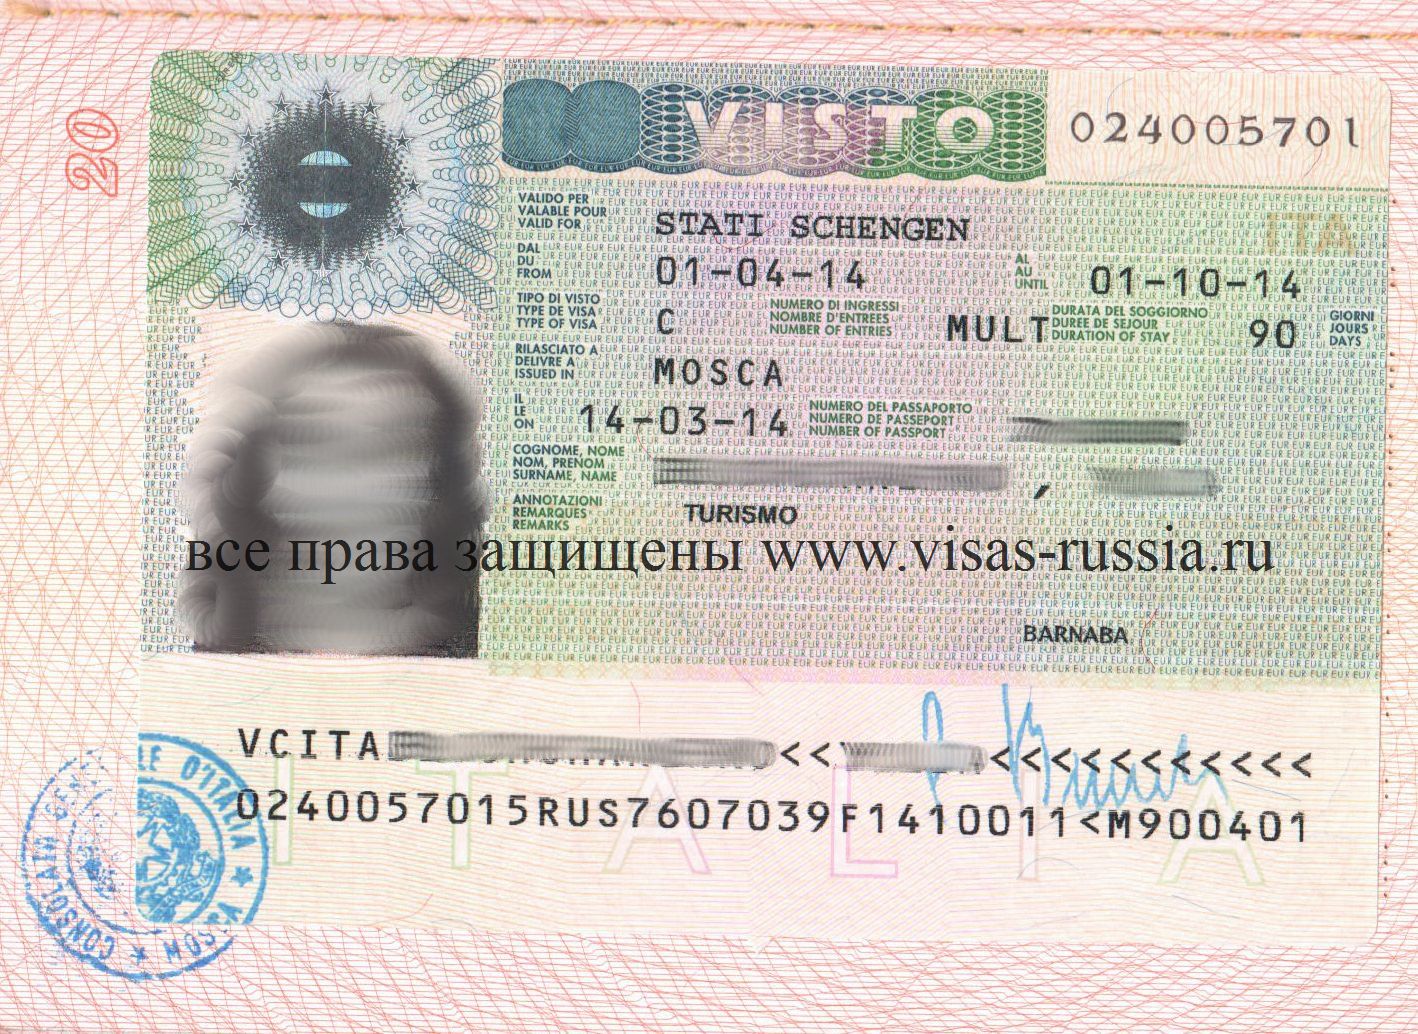 Как получить рабочую визу в чехию